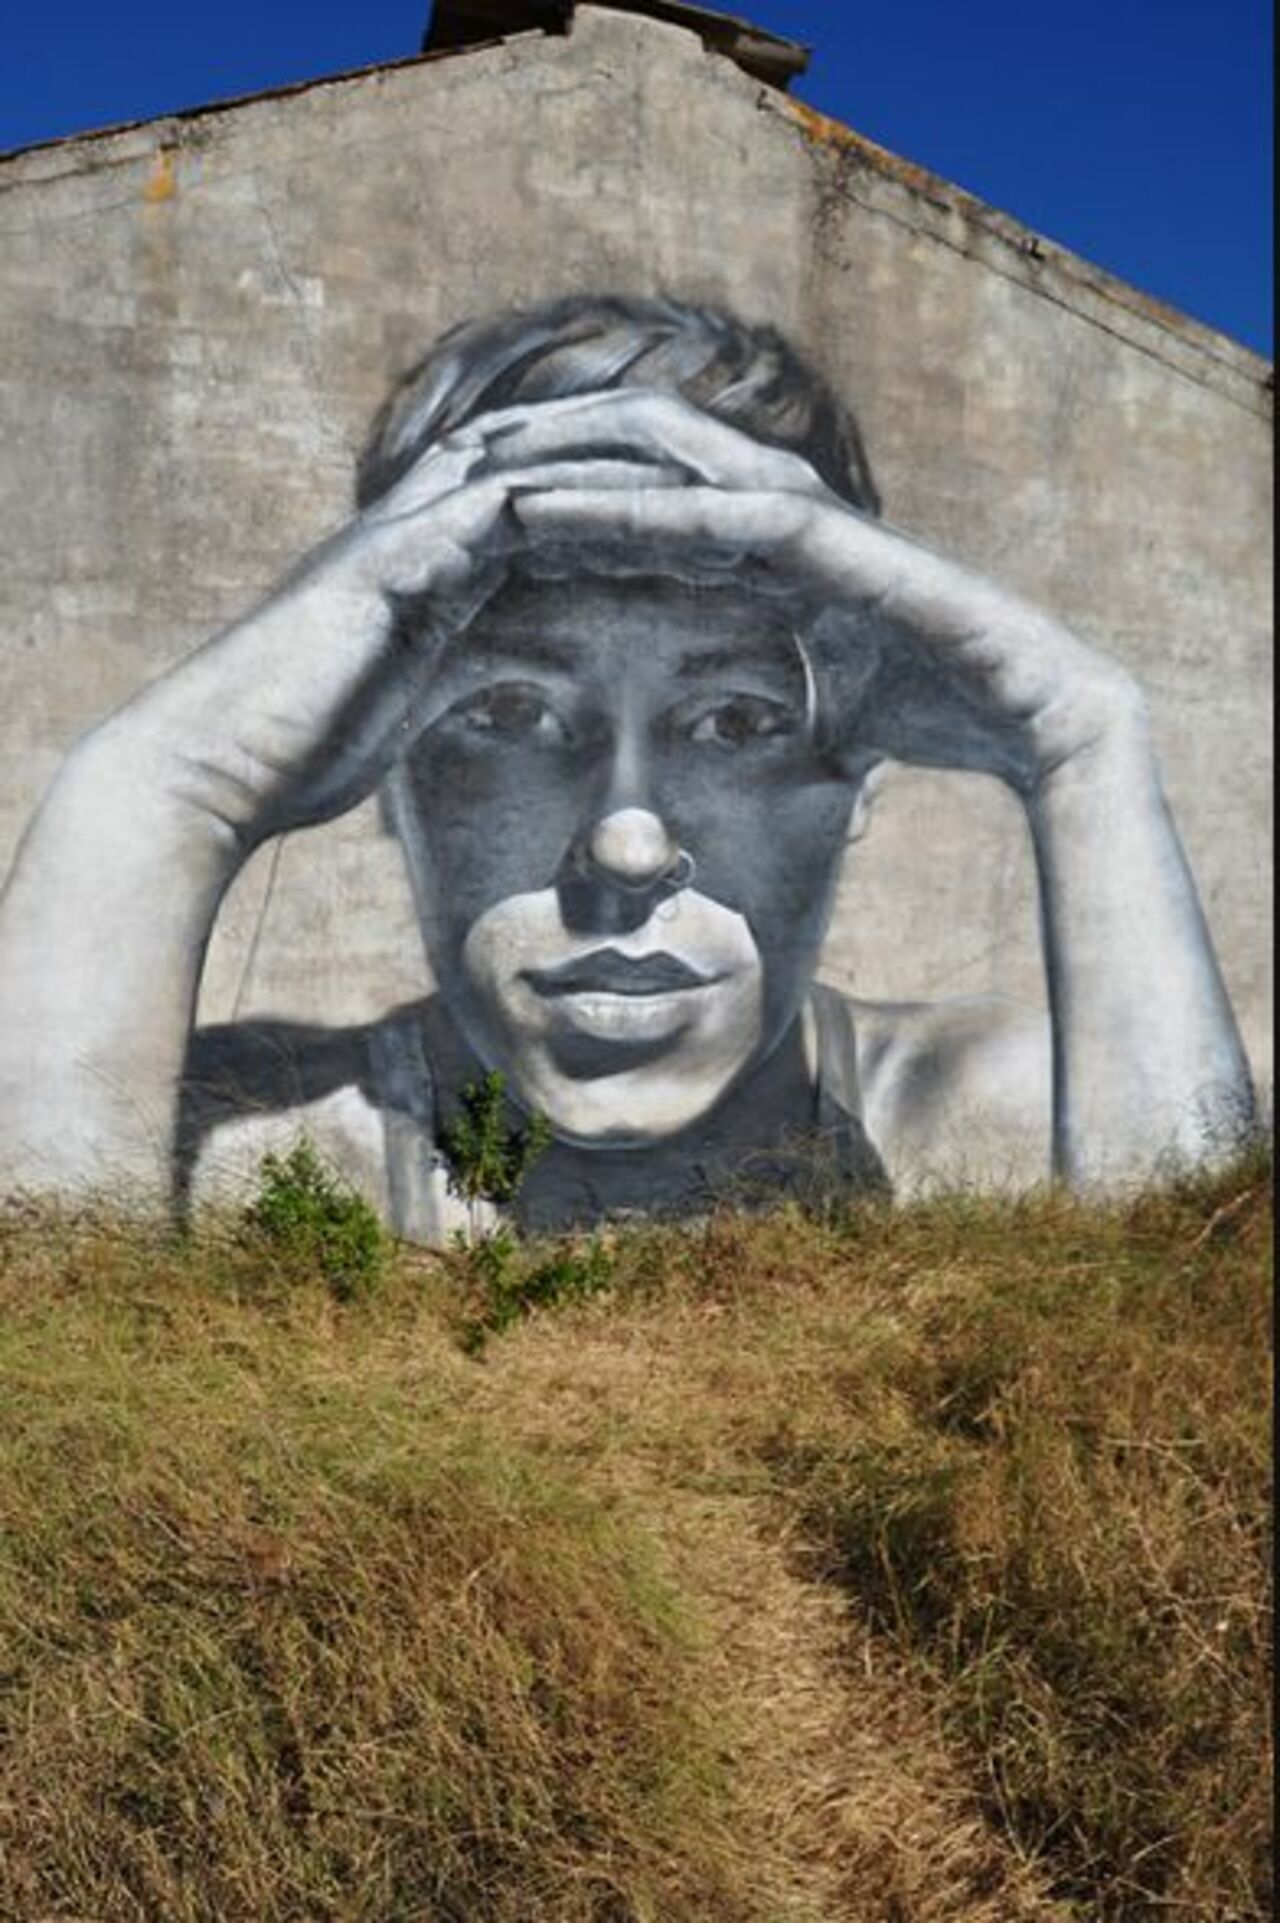 RT @DlgermanyDavid: RT @fam: street art http://bit.ly/1zBQ1Rj #streetart #graffiti http://t.co/MJs03XTrqI”